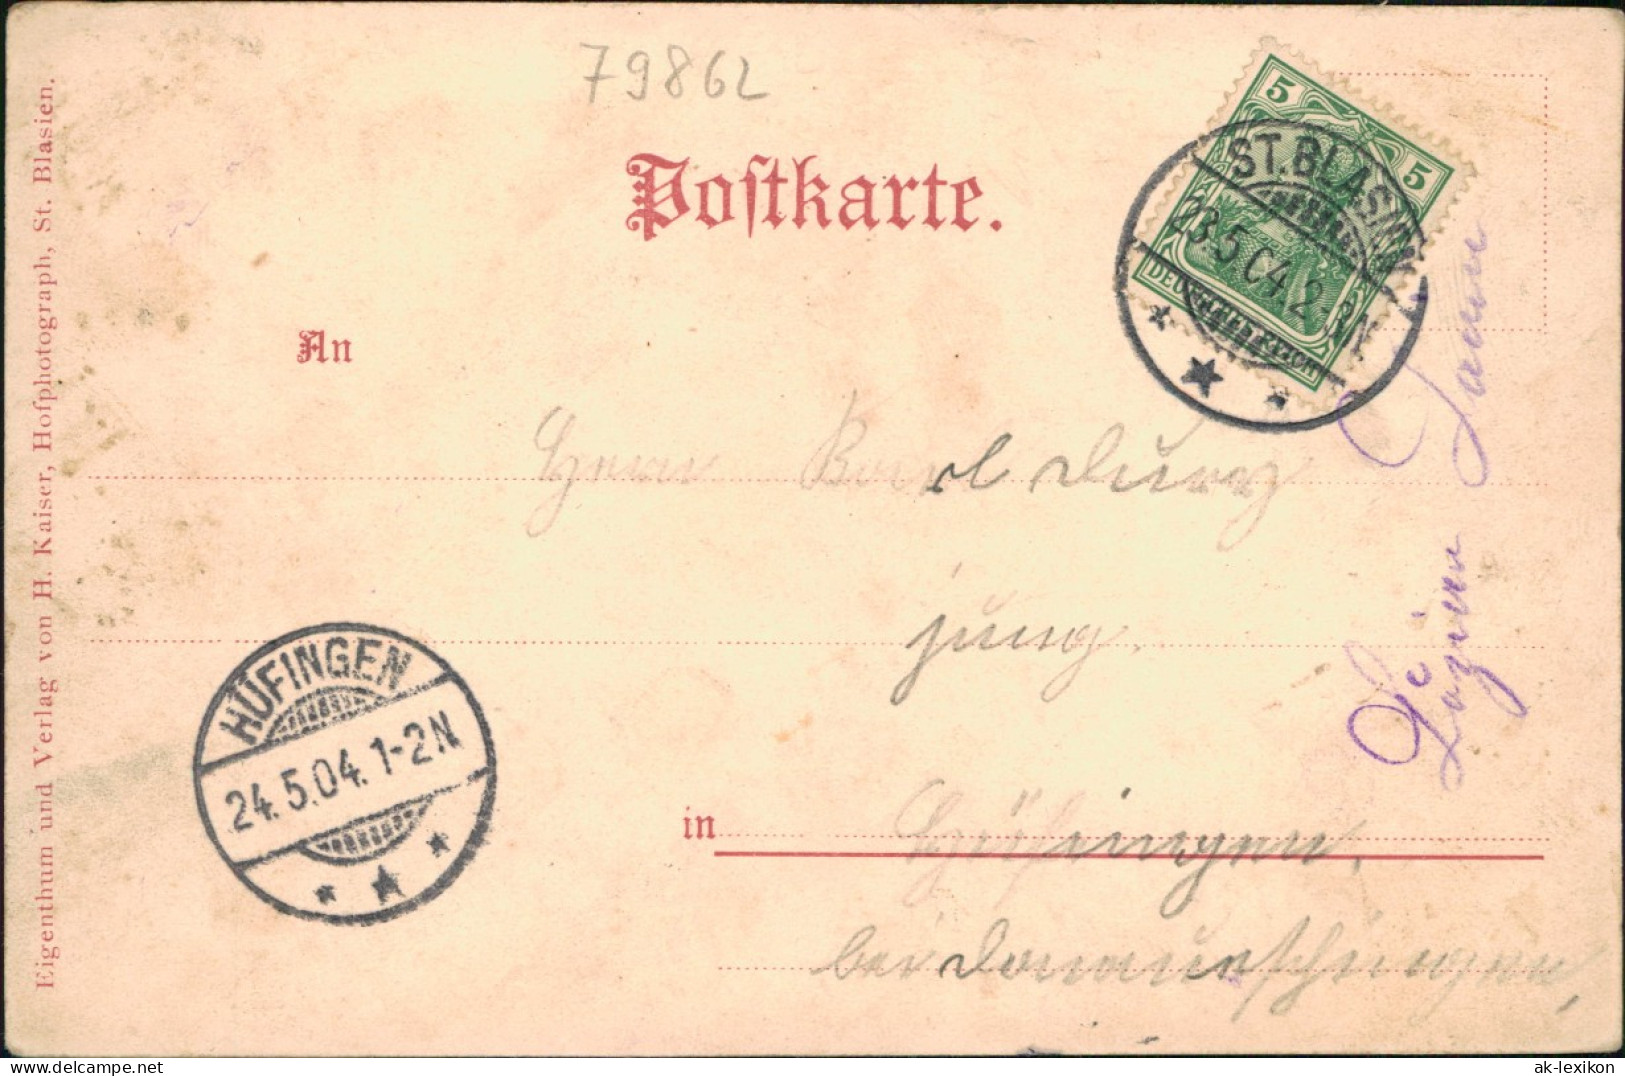 Ansichtskarte Höchenschwand Ortsansichten, Gasthaus Zum Hirschen 1904 - Hoechenschwand